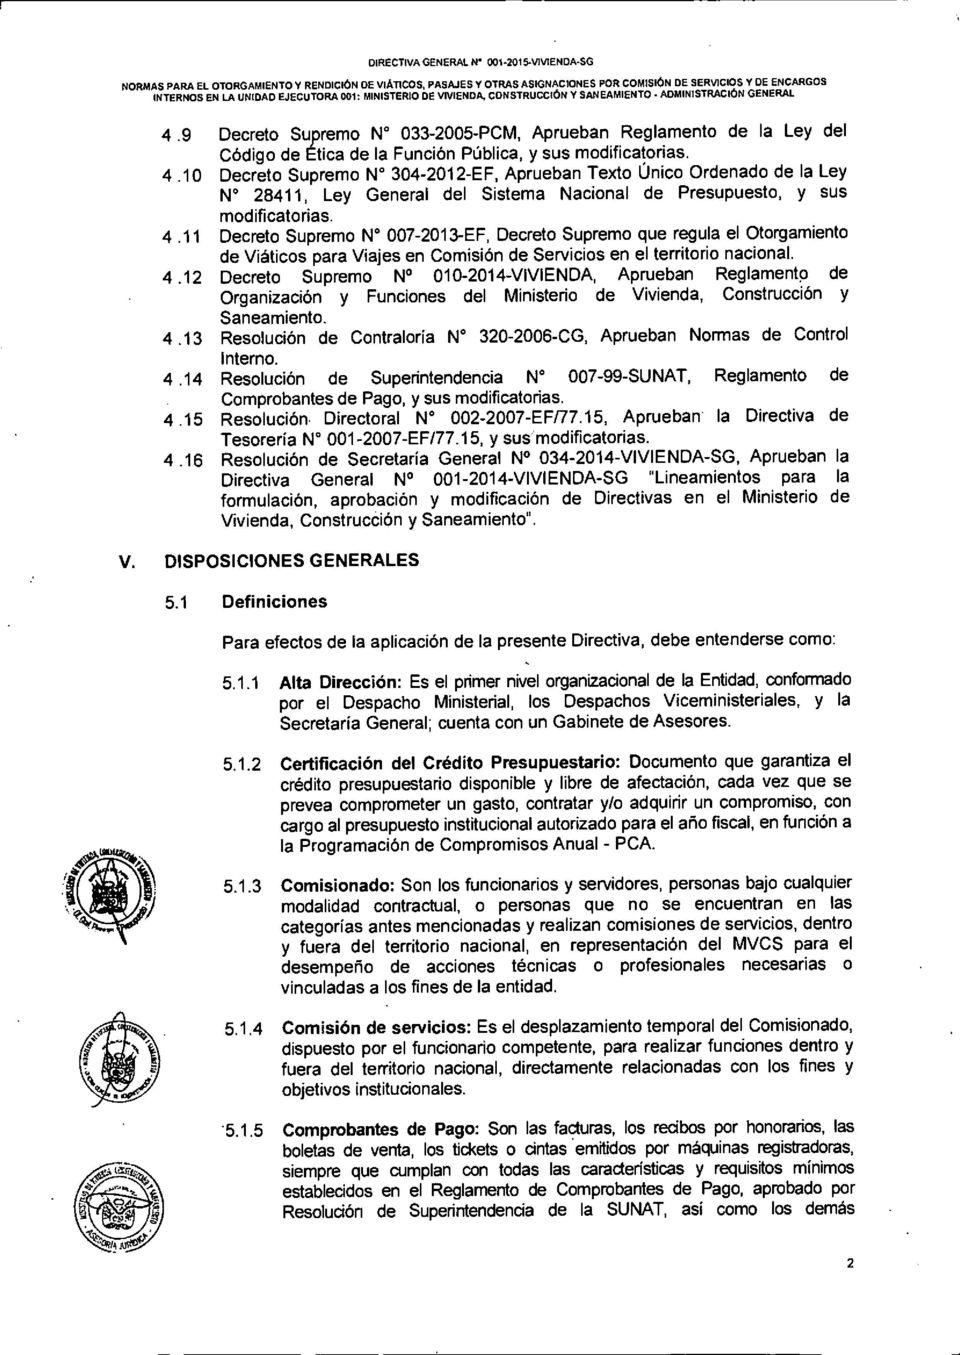 9 Decreto Supremo N 033-2005-PCM, Aprueban Reglamento de la Ley del Código de Ética de la Función Pública, y sus modificatorias. 4.